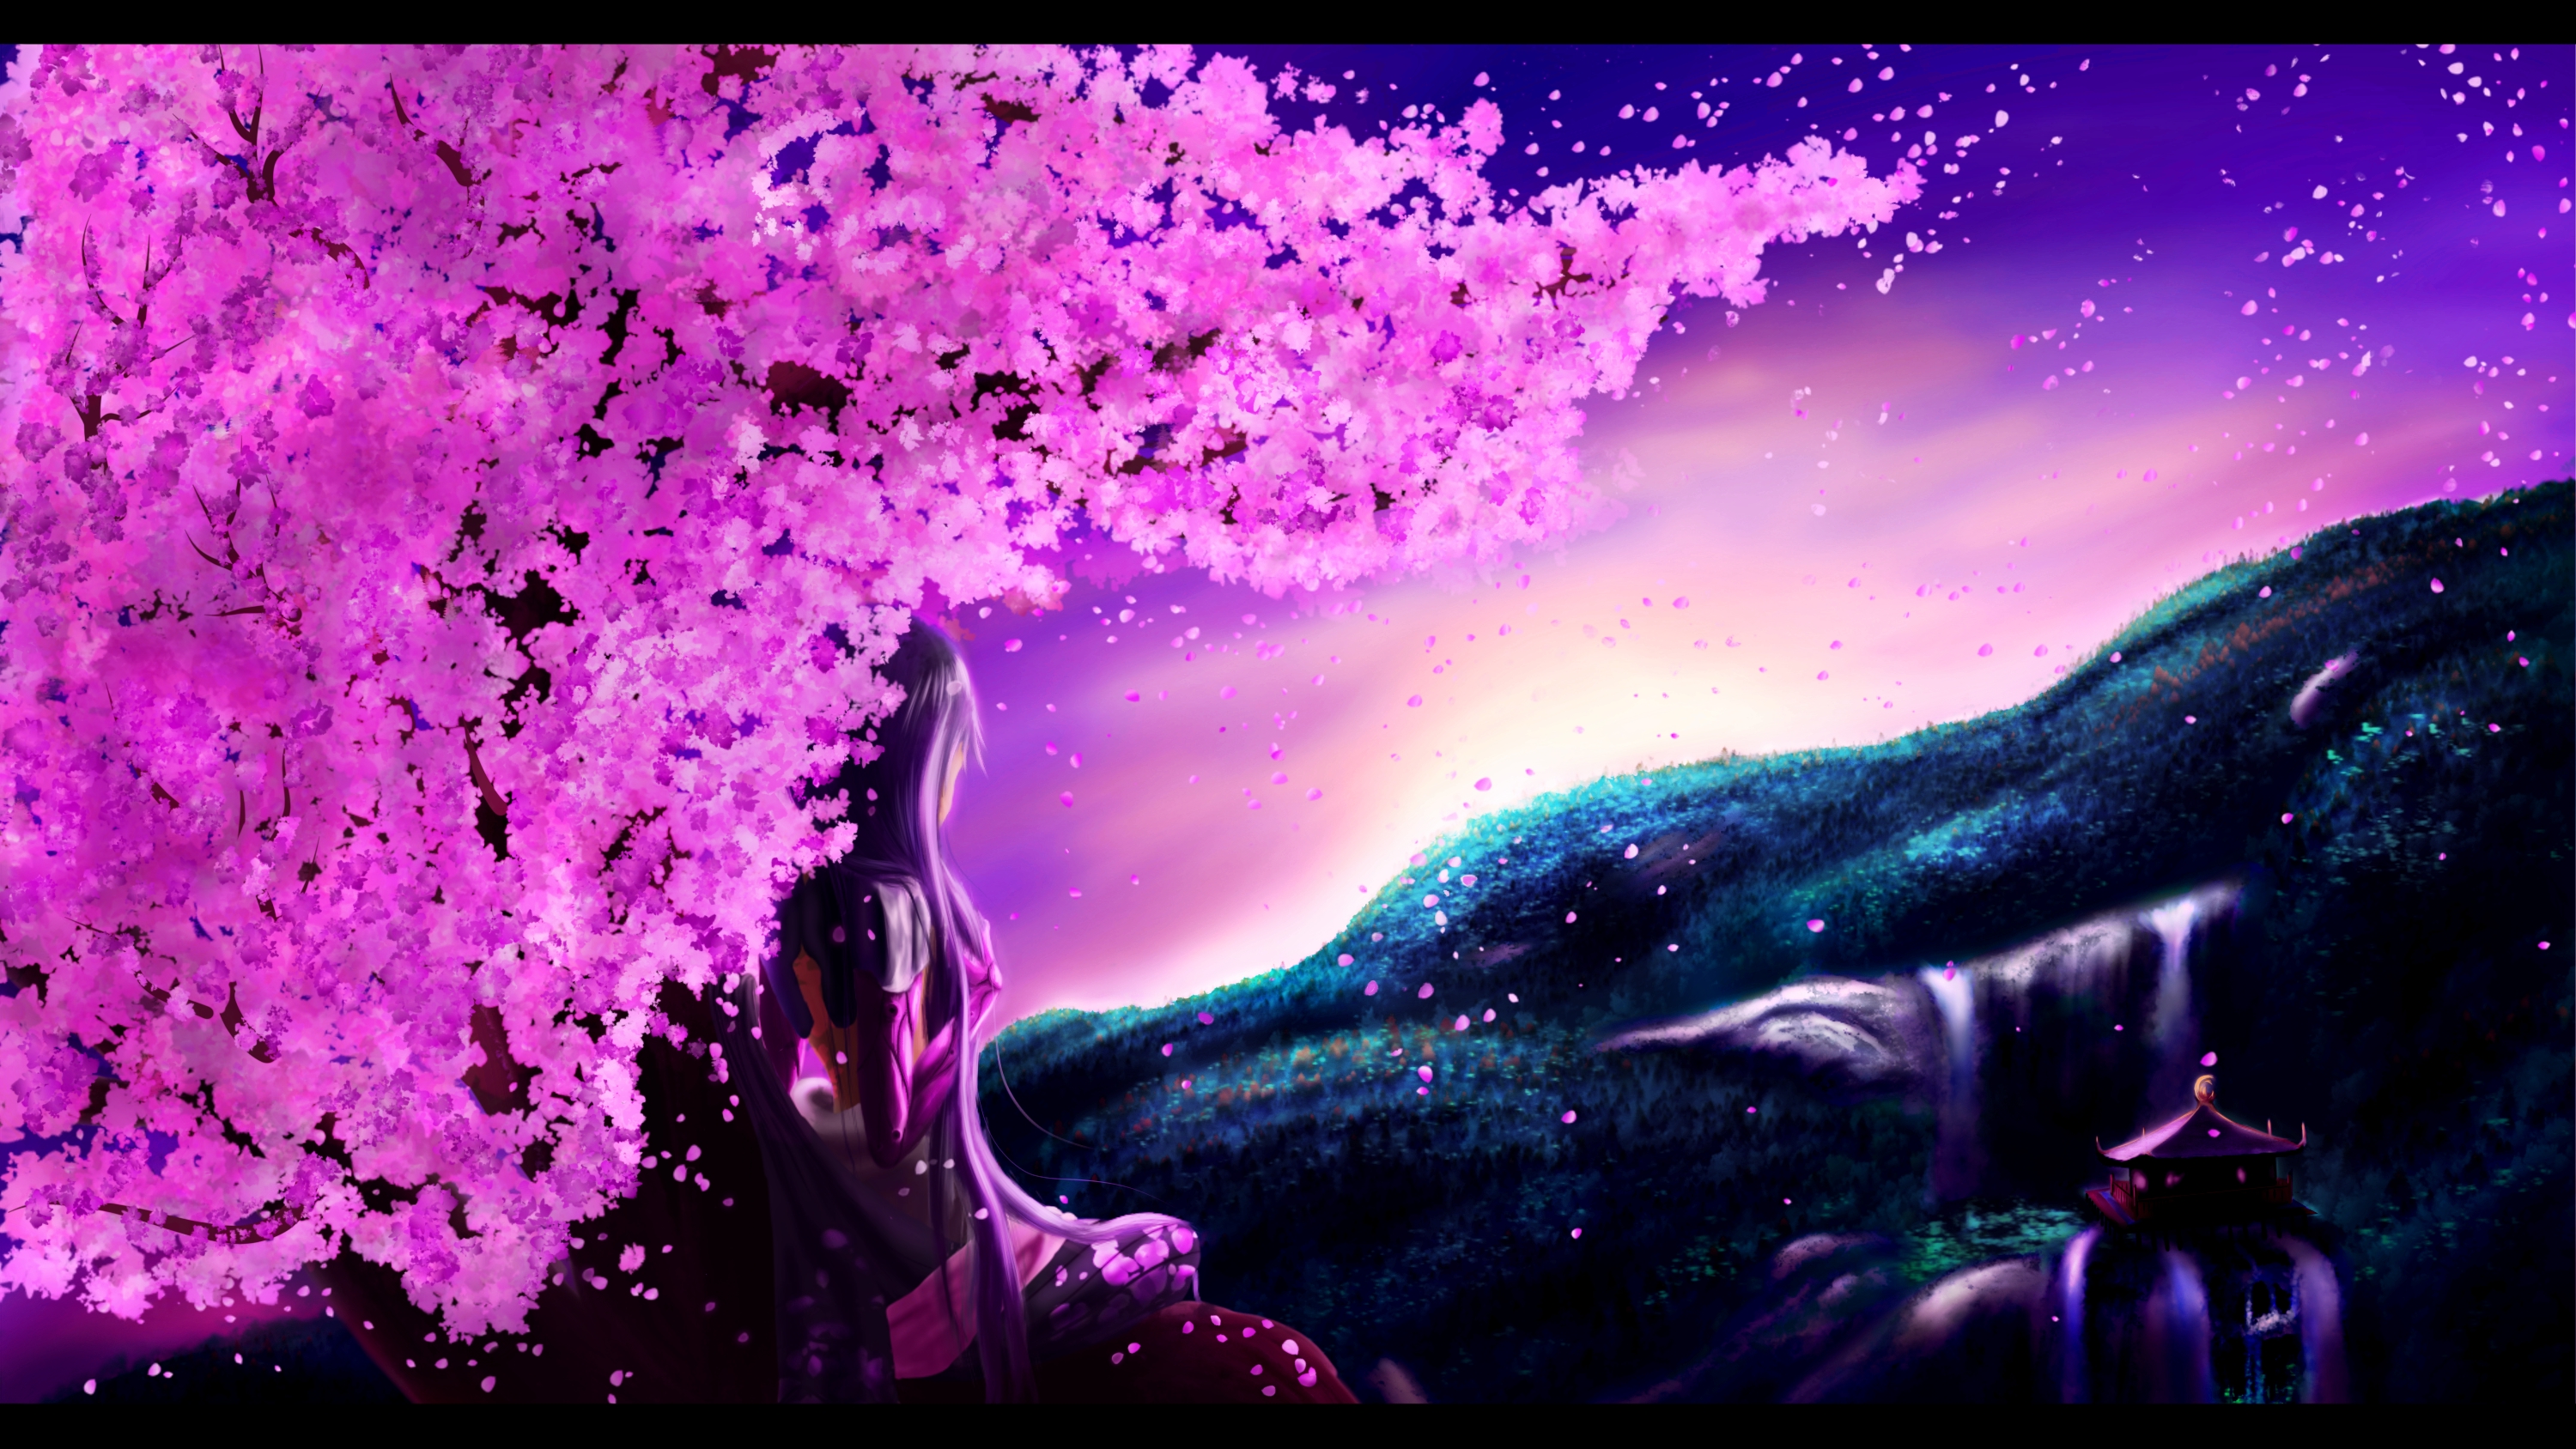 142 Anime Cherry Blossom